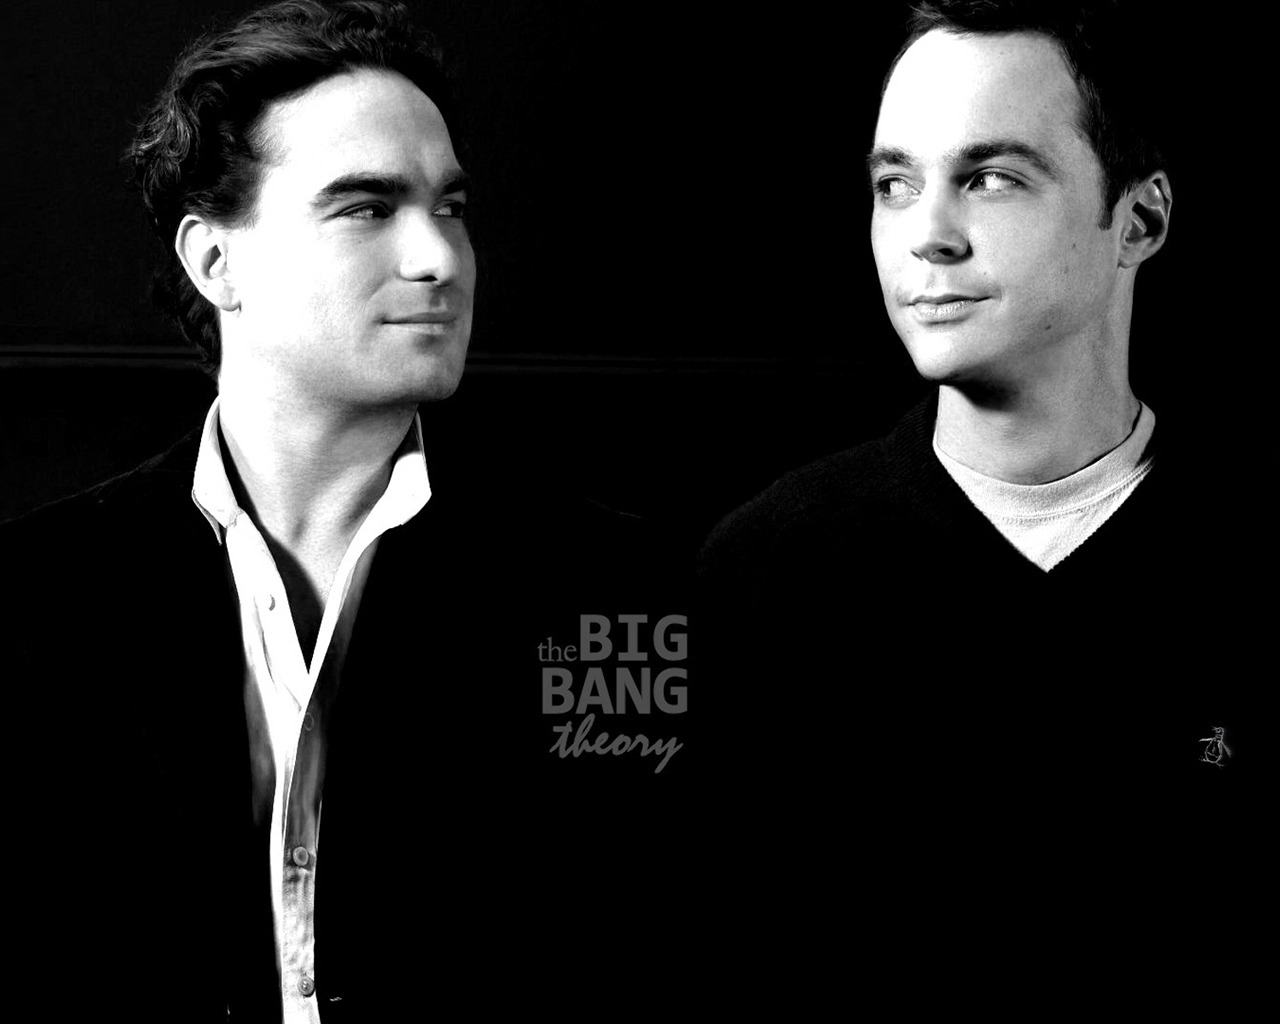 The Big Bang Theory Leonard and Sheldon for 1280 x 1024 resolution